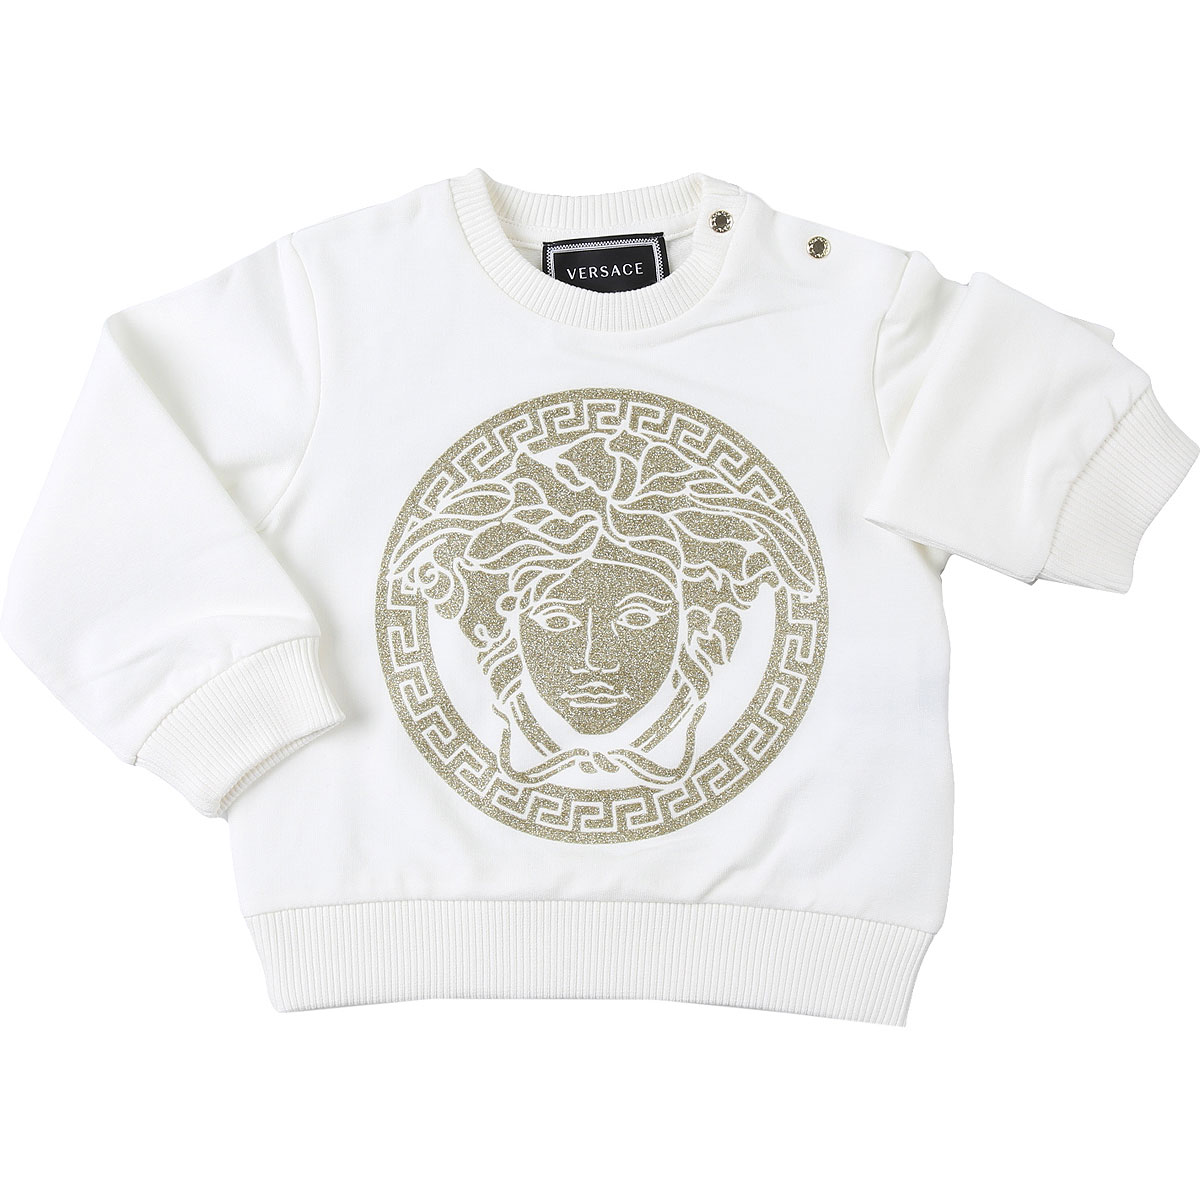 Versace Baby Sweatshirt & Kapuzenpullover für Mädchen Günstig im Sale, Weiss, Baumwolle, 2017, 12M 18M 24M 2Y 3Y 6M 9M